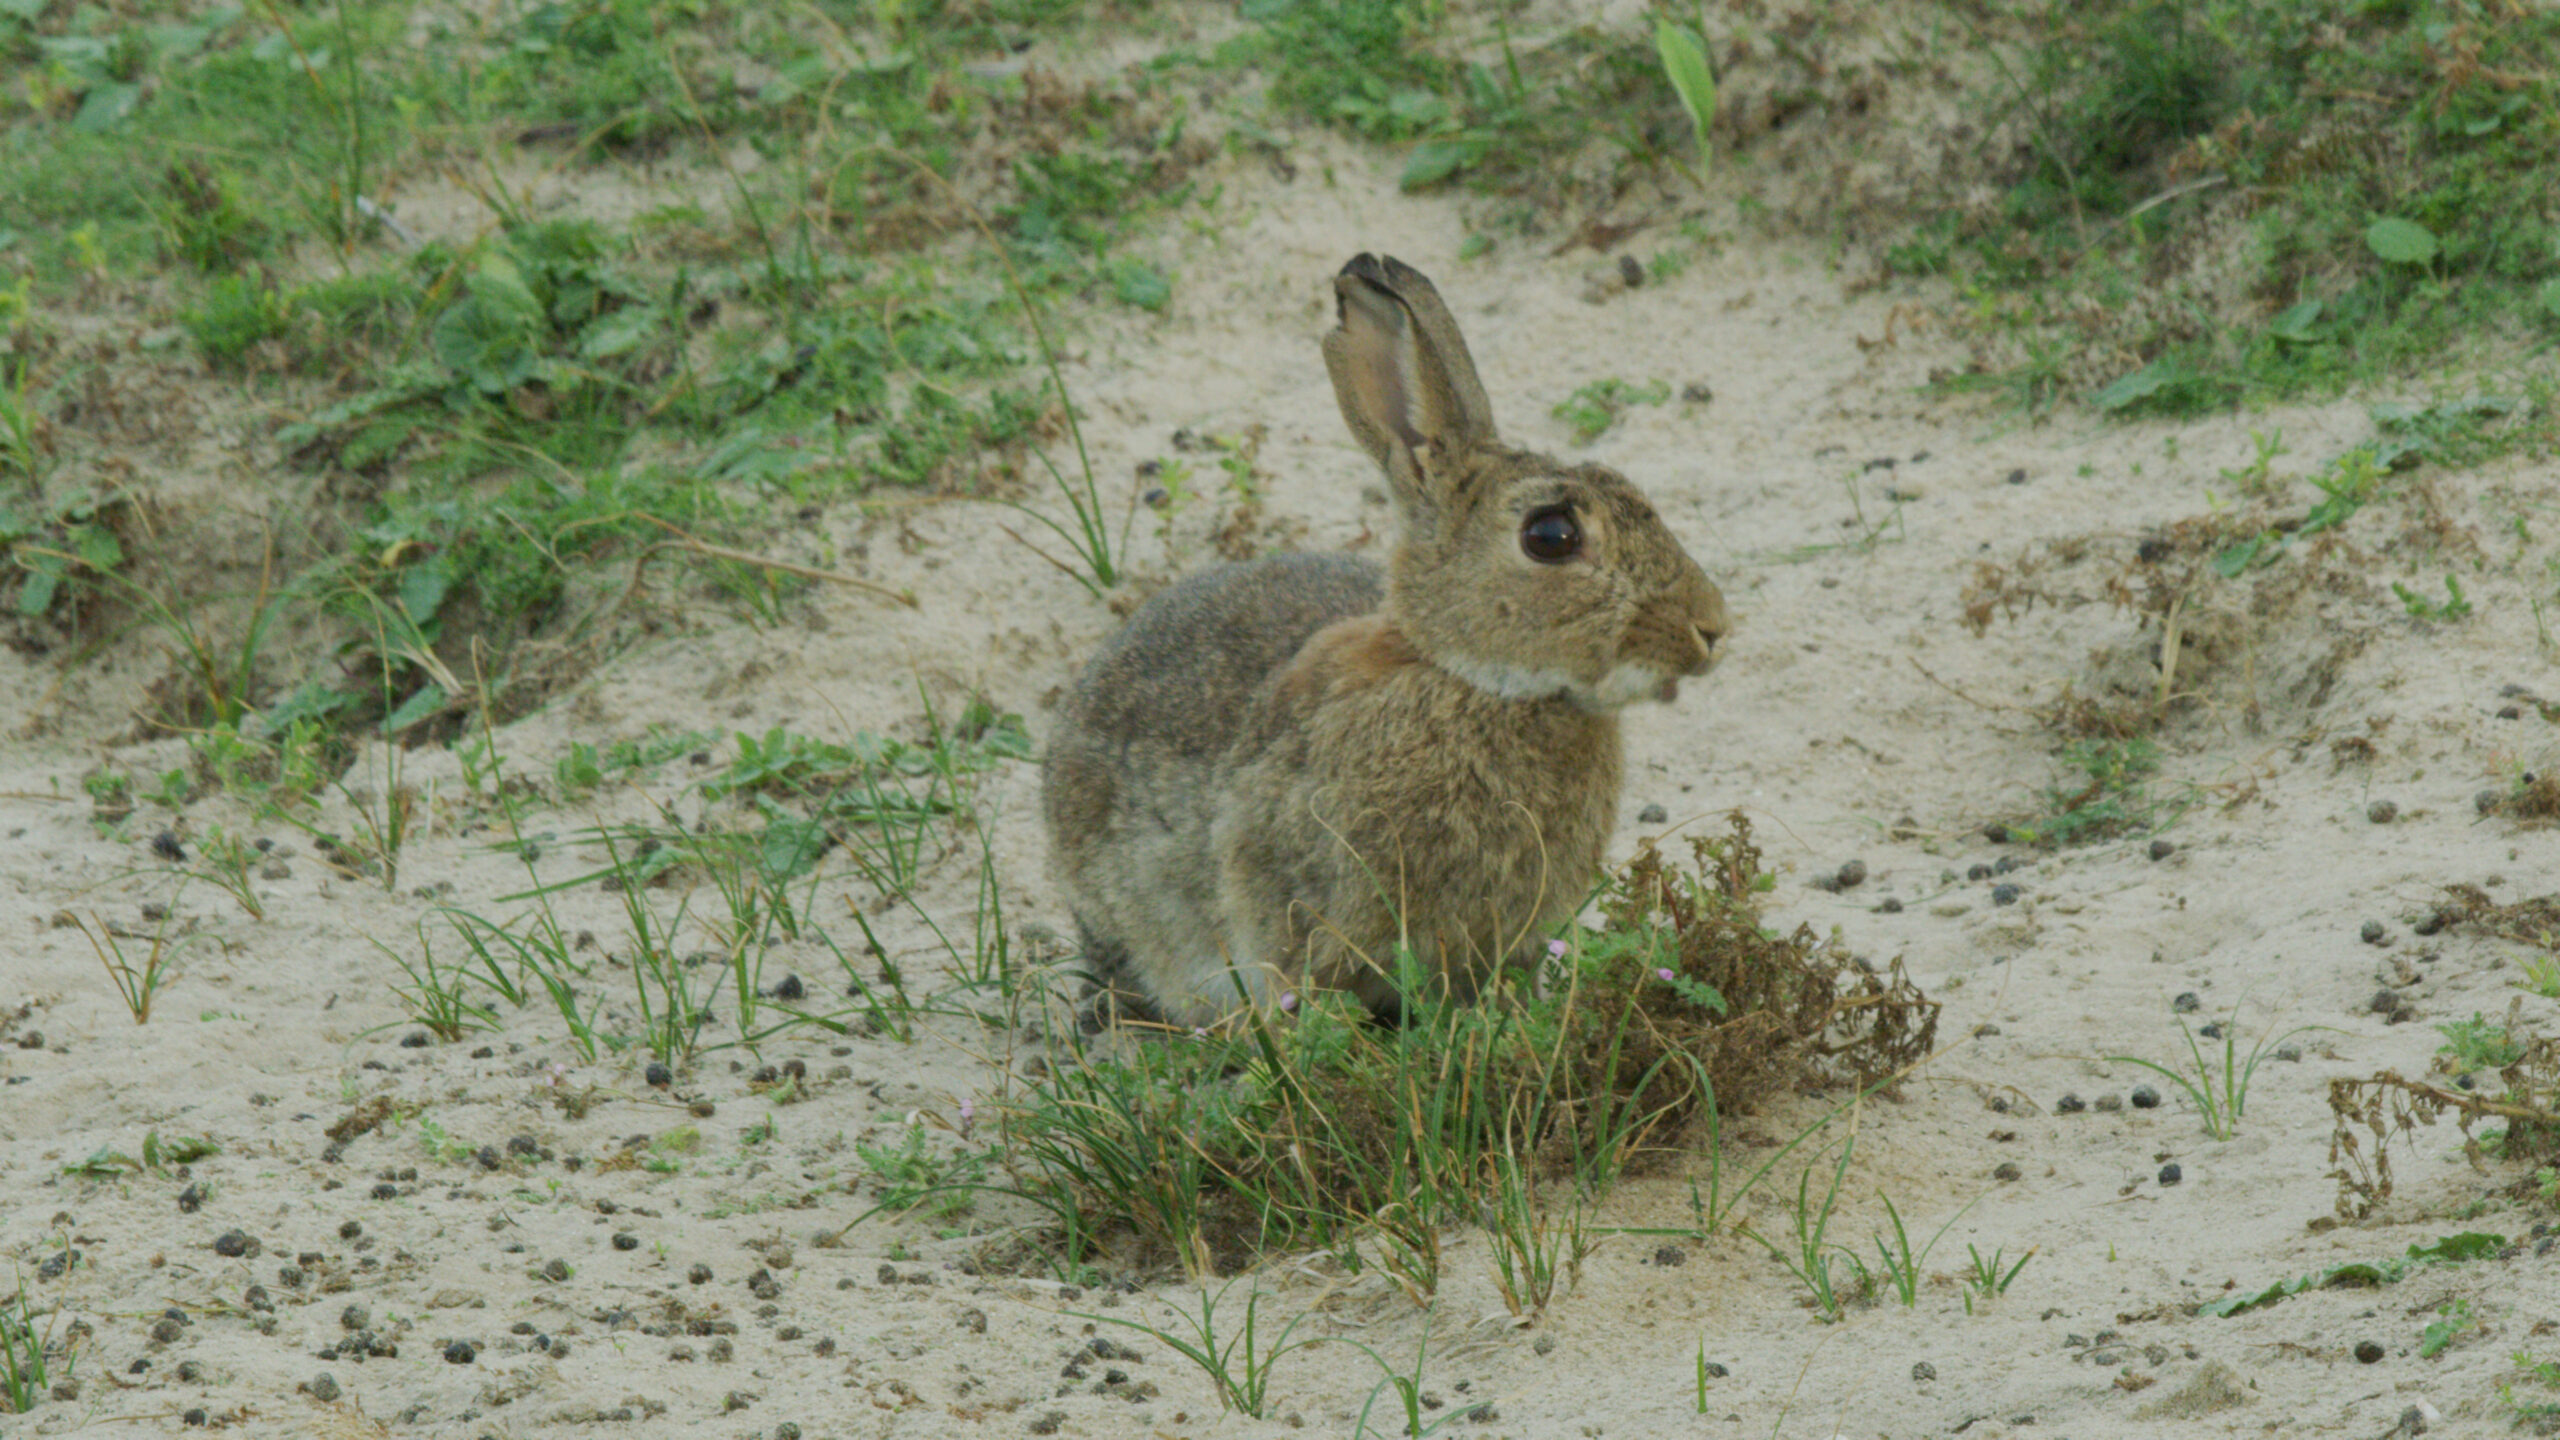 006-WILDDUNES - Rabbit eating in the Dunes